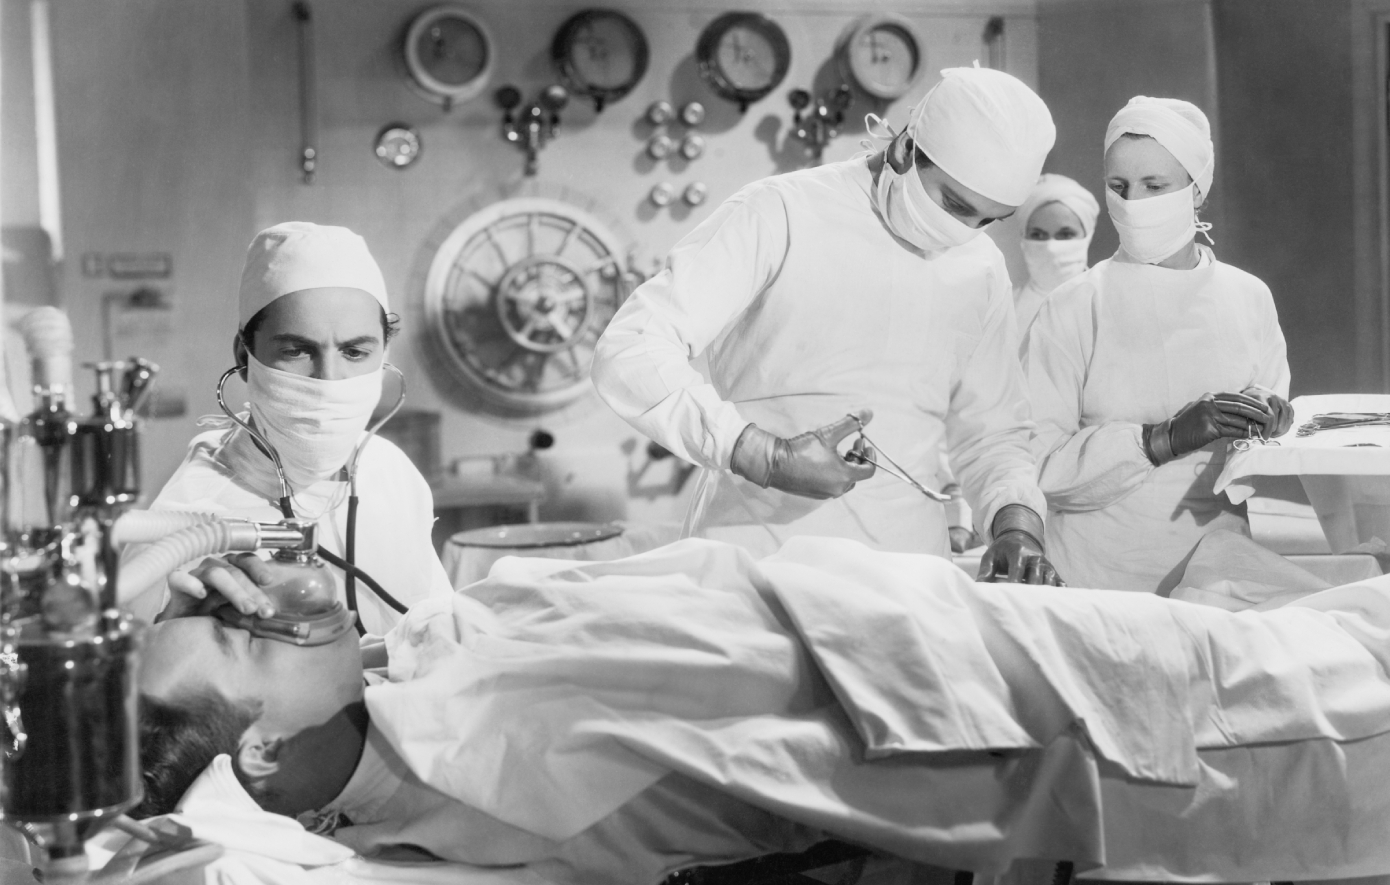 Σαν σήμερα 10 Μαΐου: Έλληνας γιατρός αφαιρεί ολόκληρο νεφρό από ασθενή εν έτει 1902 &#8211; Η εγχείρηση αυτή είχε 1 στις 1000 πιθανότητα επιτυχίας